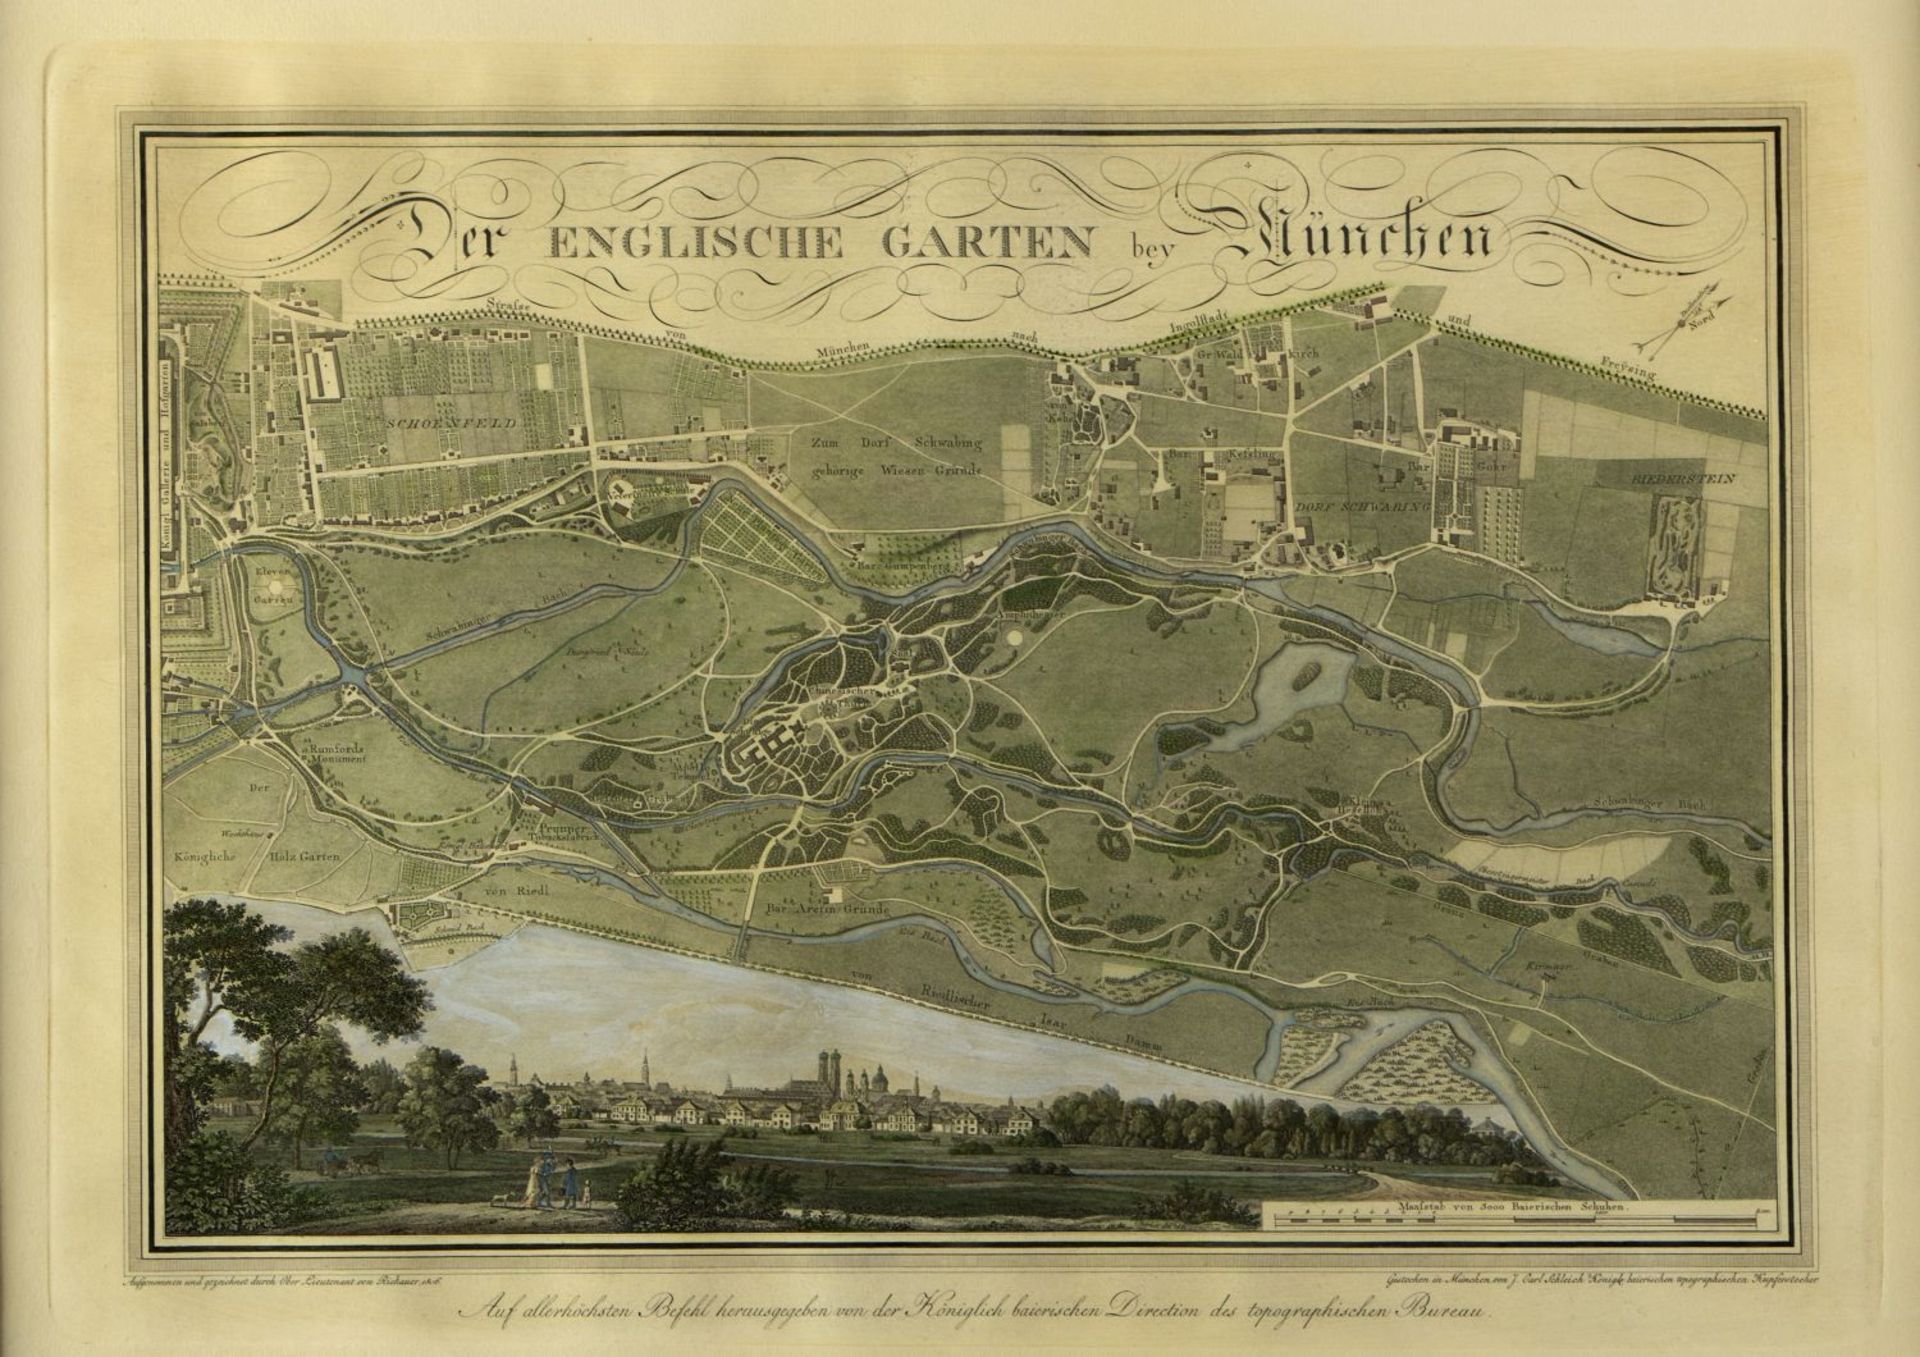 Steidlin, Joh. Matt. Schleich, J. Carl Sankt Martin in Landshut. Englischer Garten München. 2 Radier - Image 2 of 3